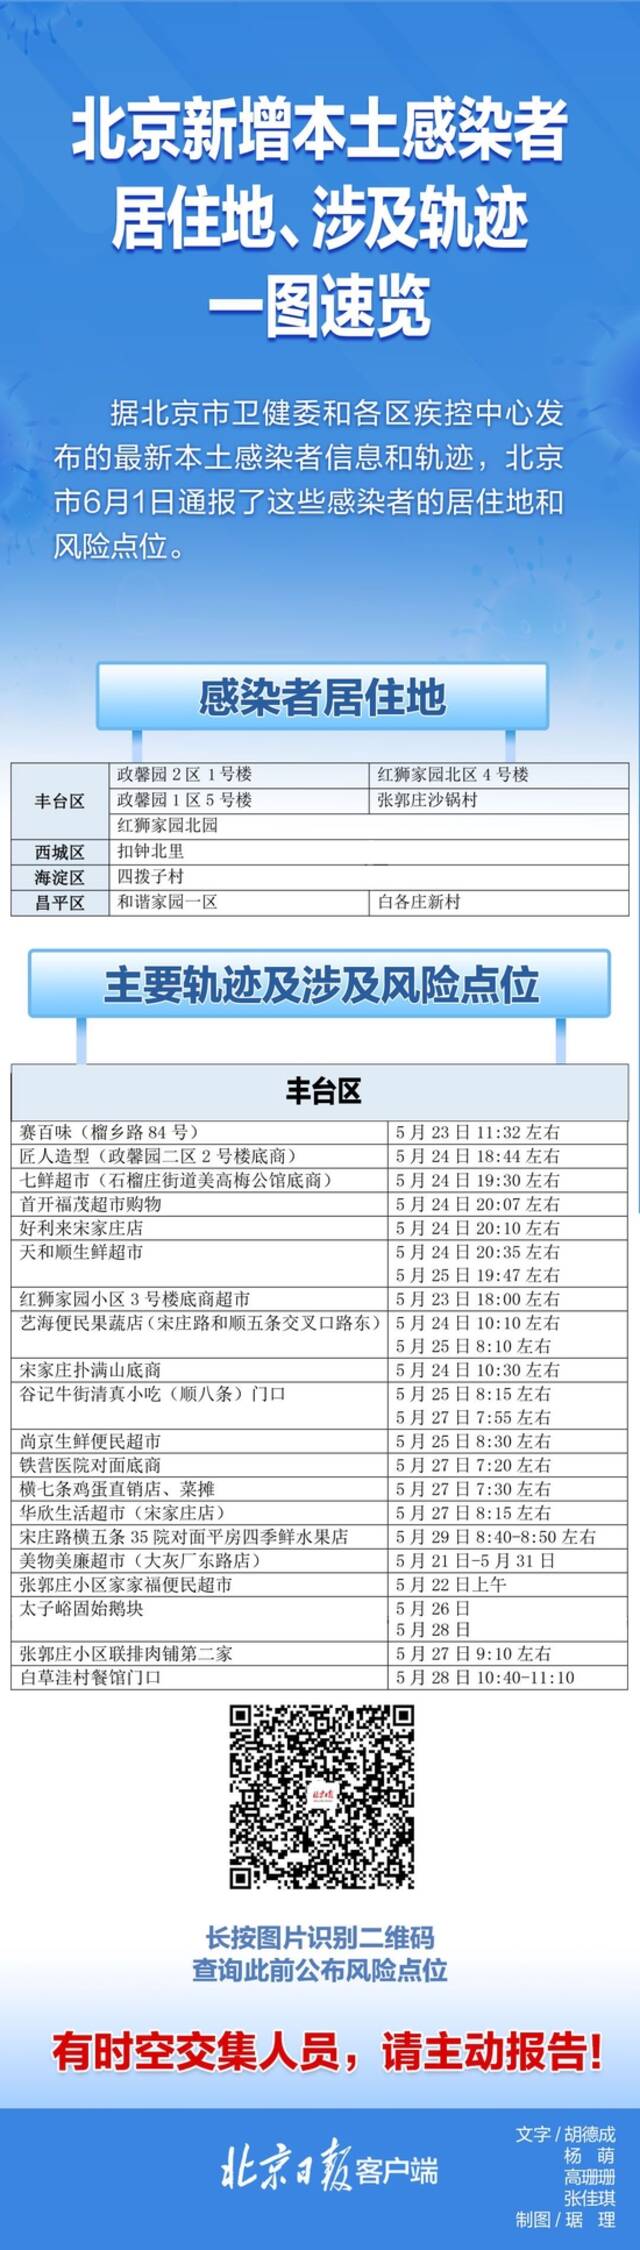 速自查！北京6月1日通报感染者居住地、风险点位一图速览